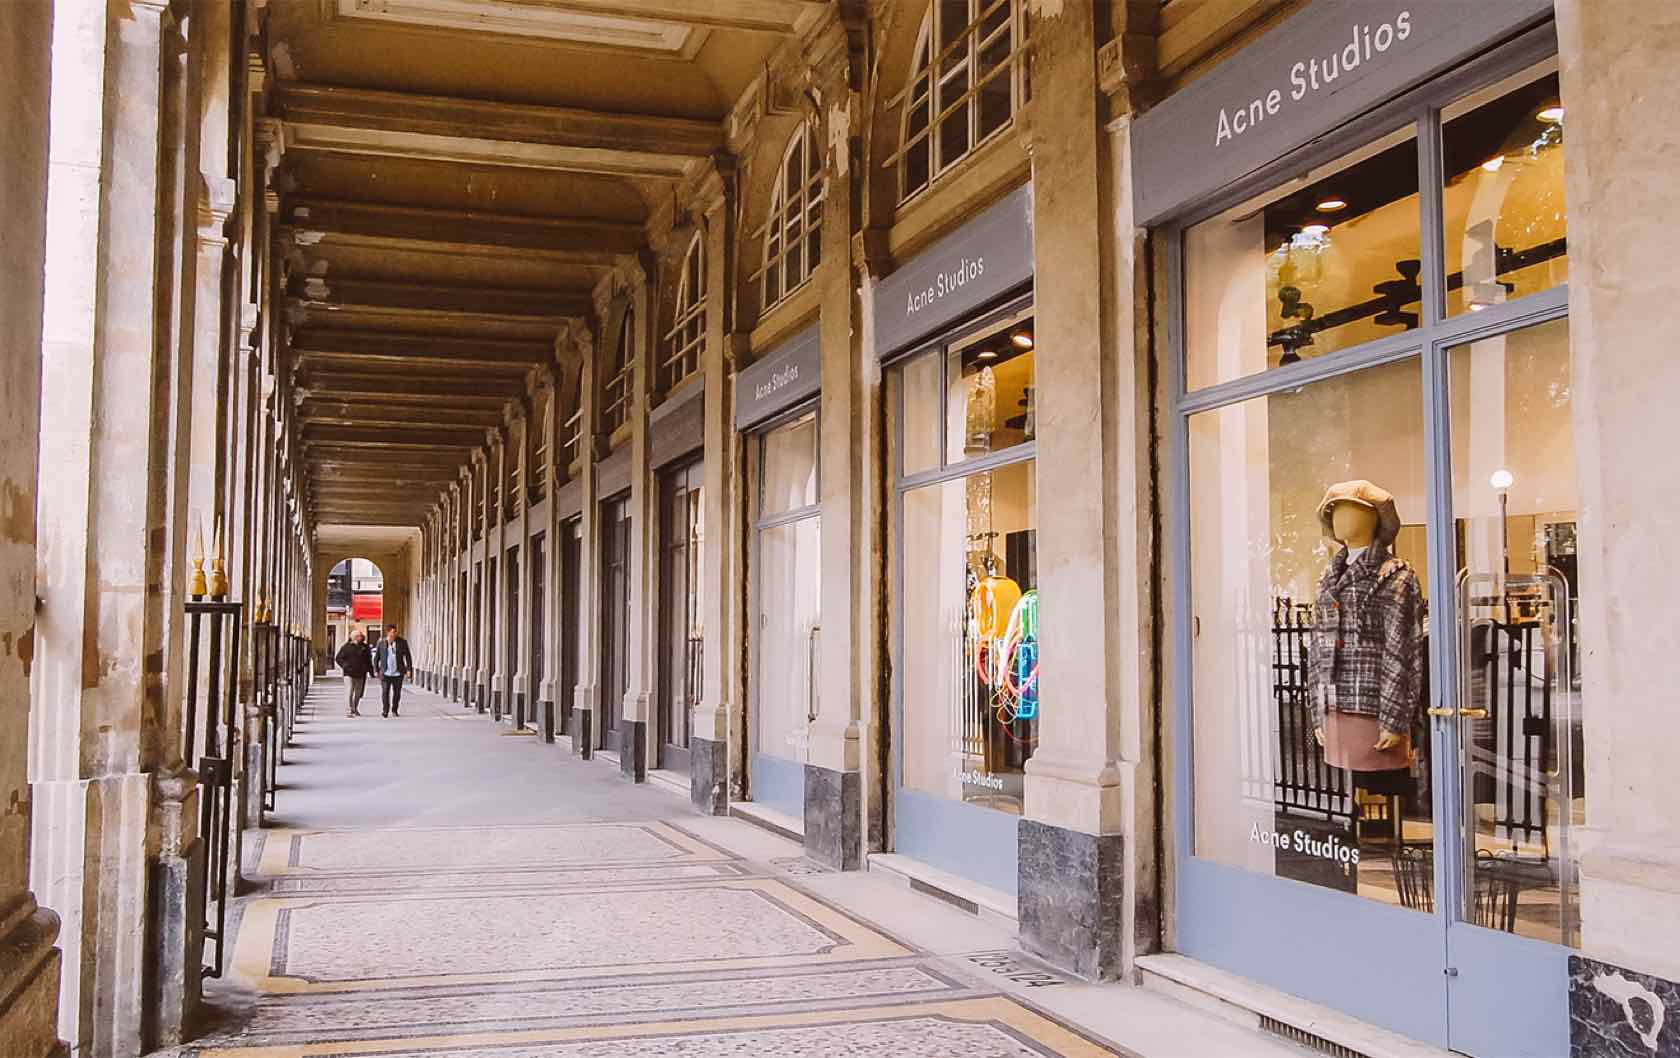 Palais-Royal History: A Peaceful Place for Parisians - Paris Perfect